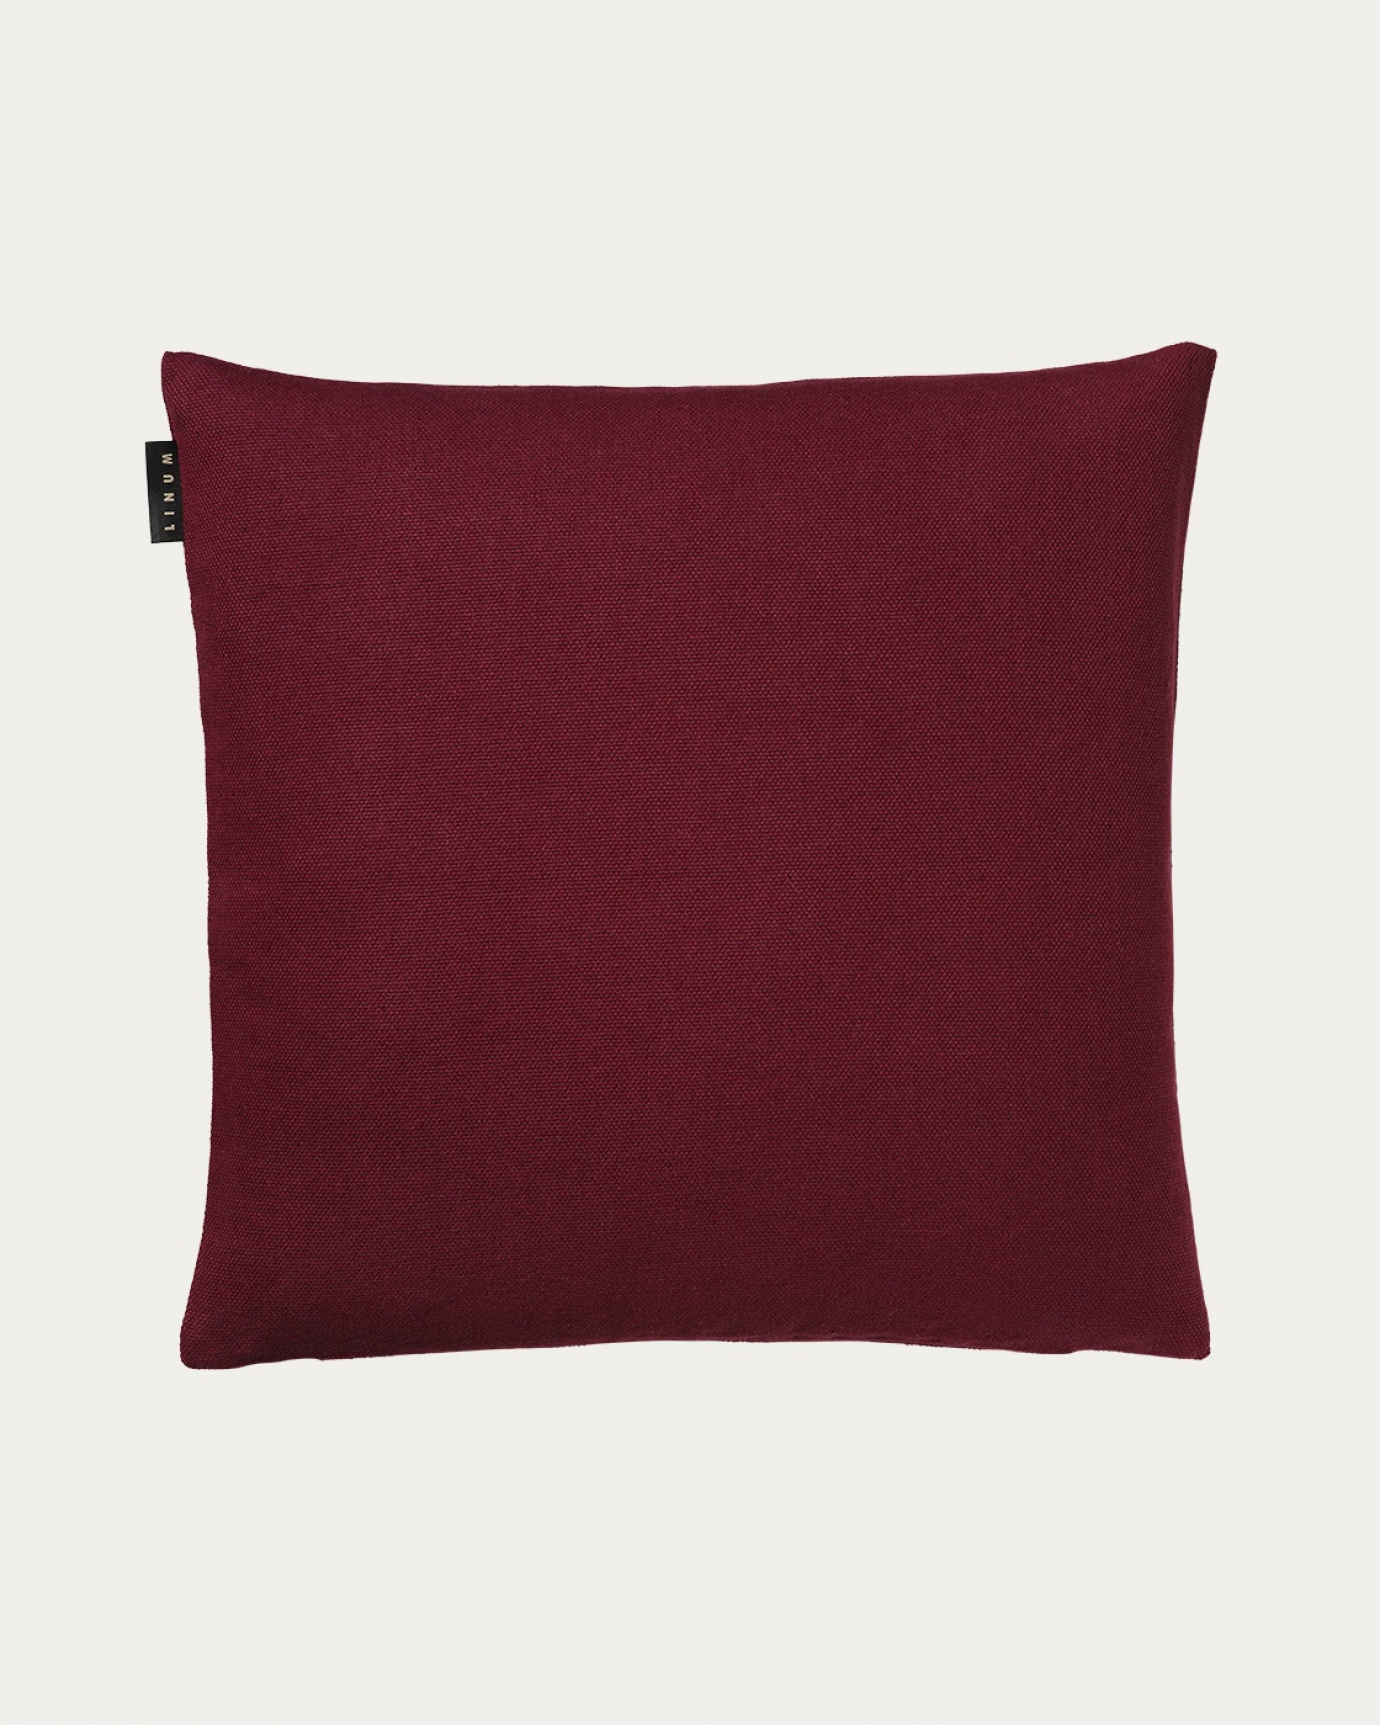 Immagine prodotto rosso borgogna PEPPER copricuscini in morbido cotone di LINUM DESIGN. Facile da lavare e resistente per generazioni. Dimensioni 50x50 cm.